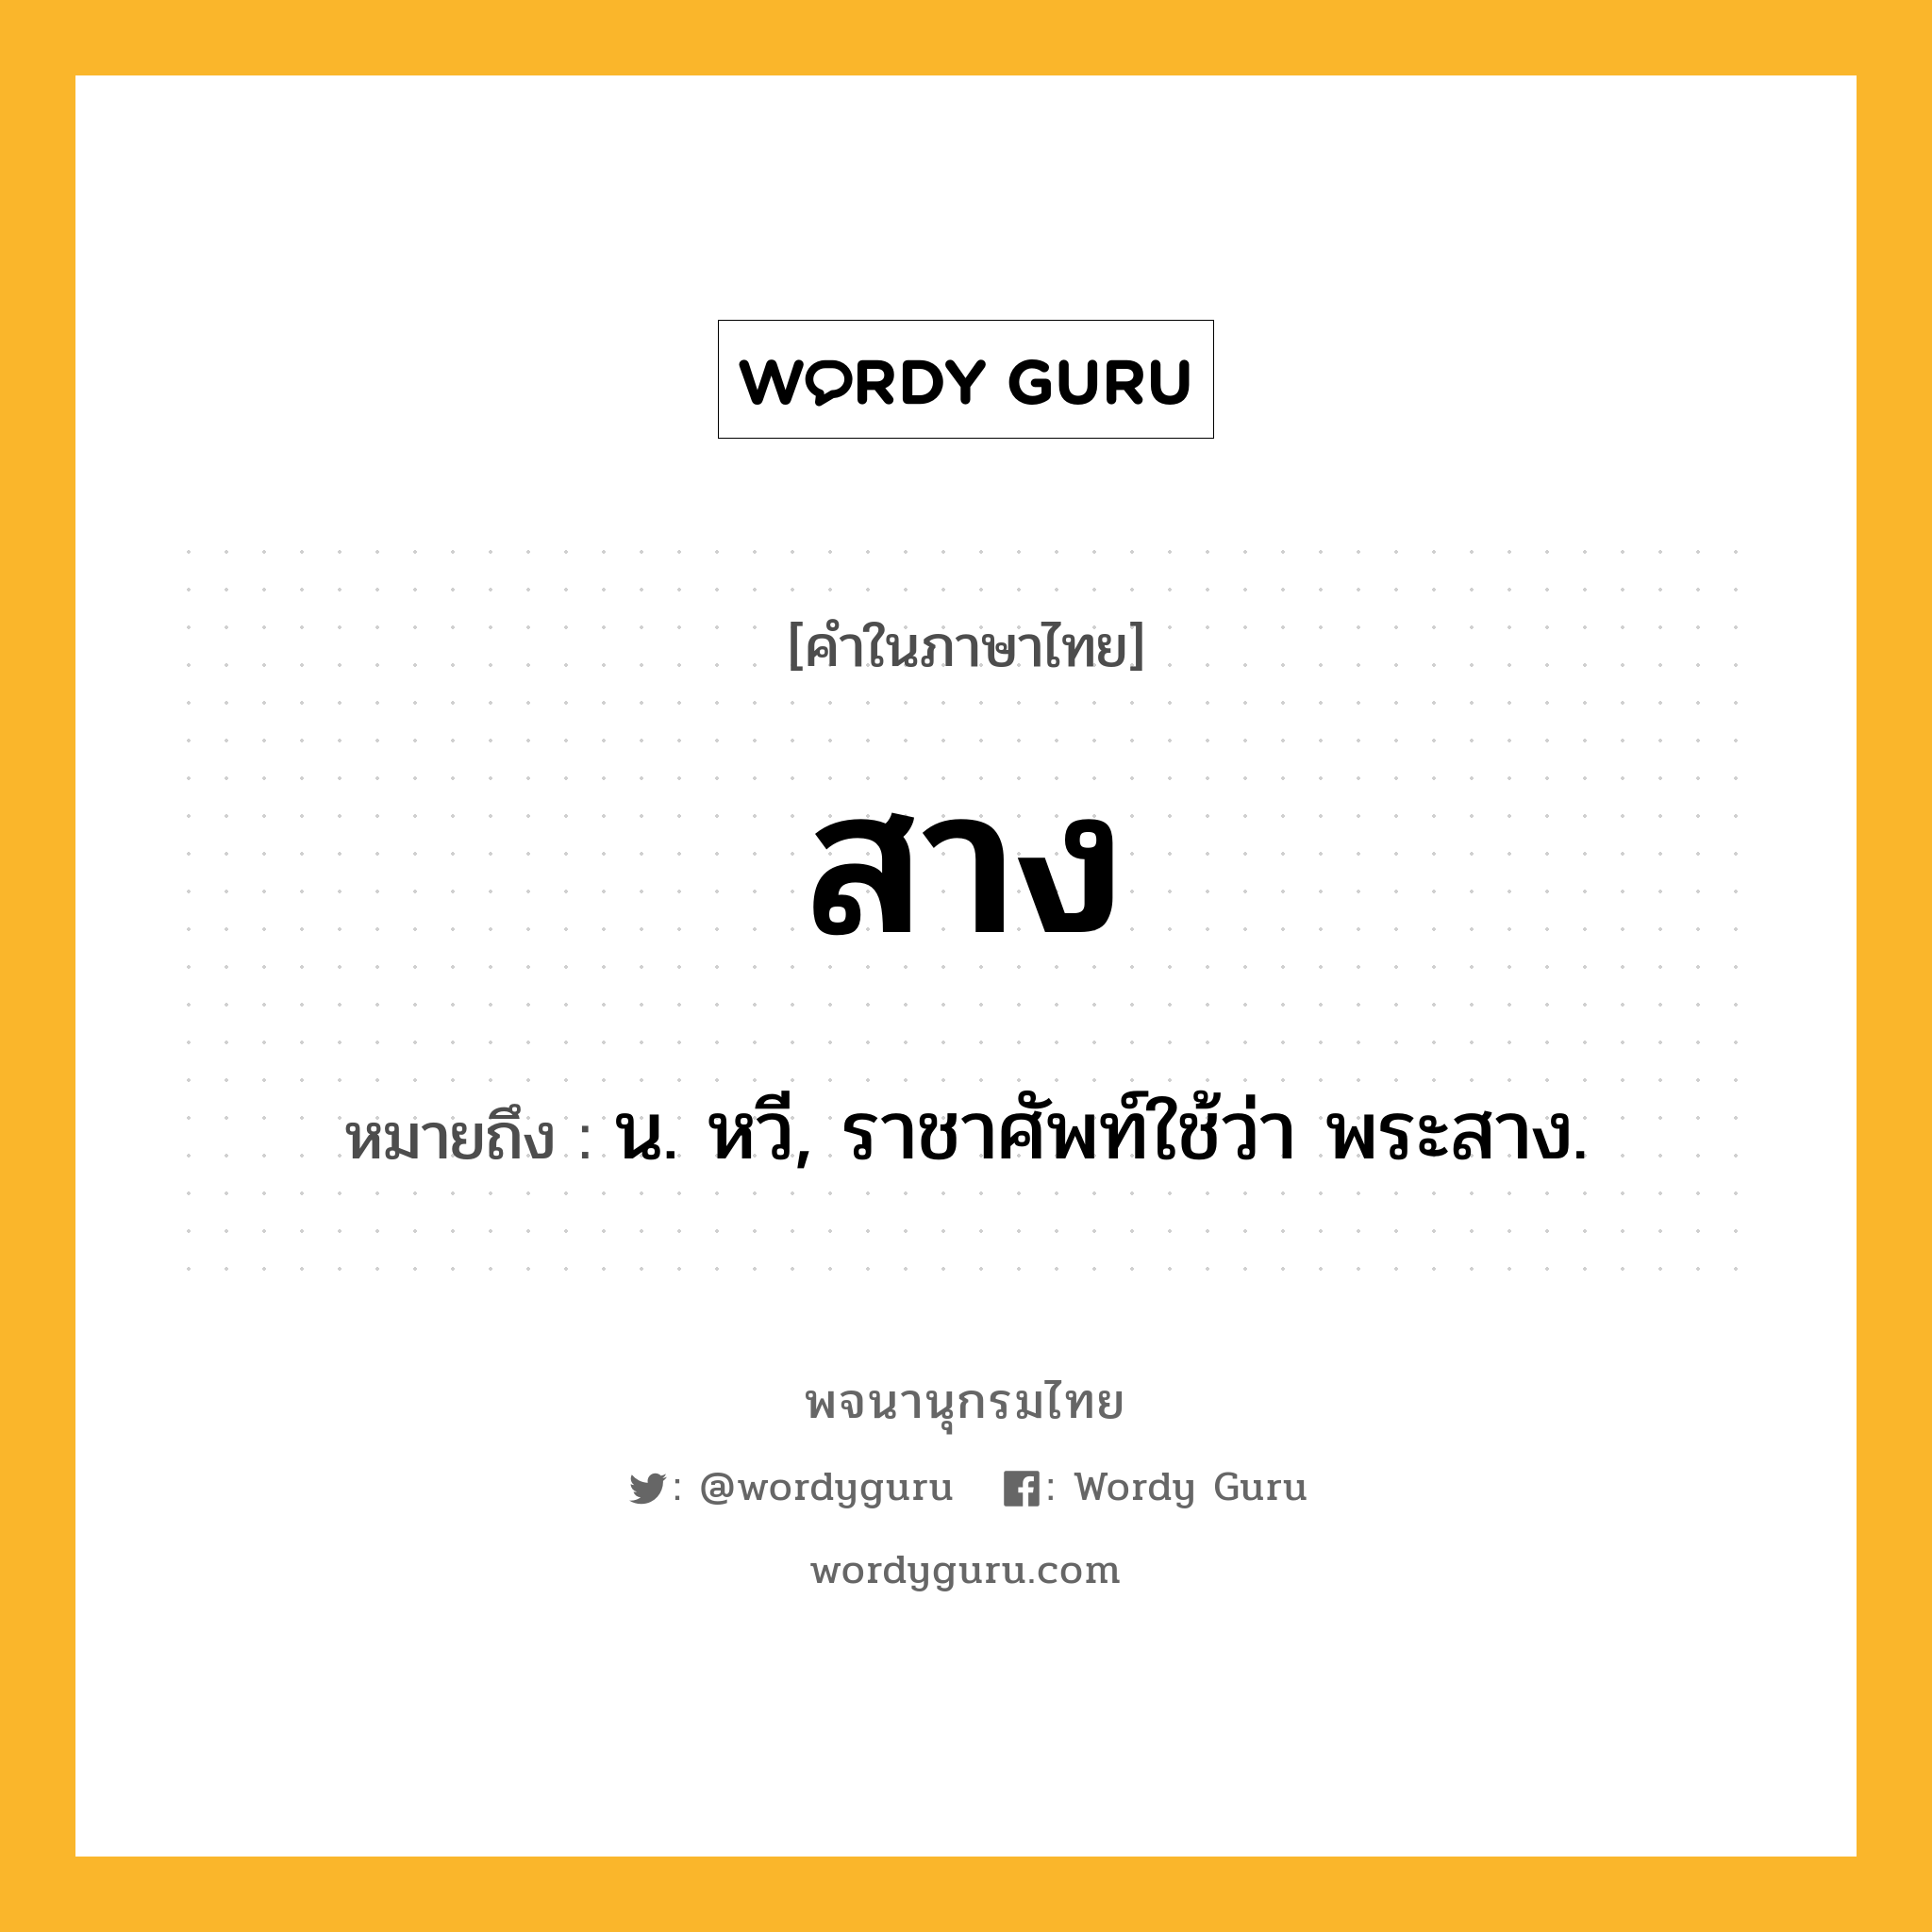 สาง ความหมาย หมายถึงอะไร?, คำในภาษาไทย สาง หมายถึง น. หวี, ราชาศัพท์ใช้ว่า พระสาง.